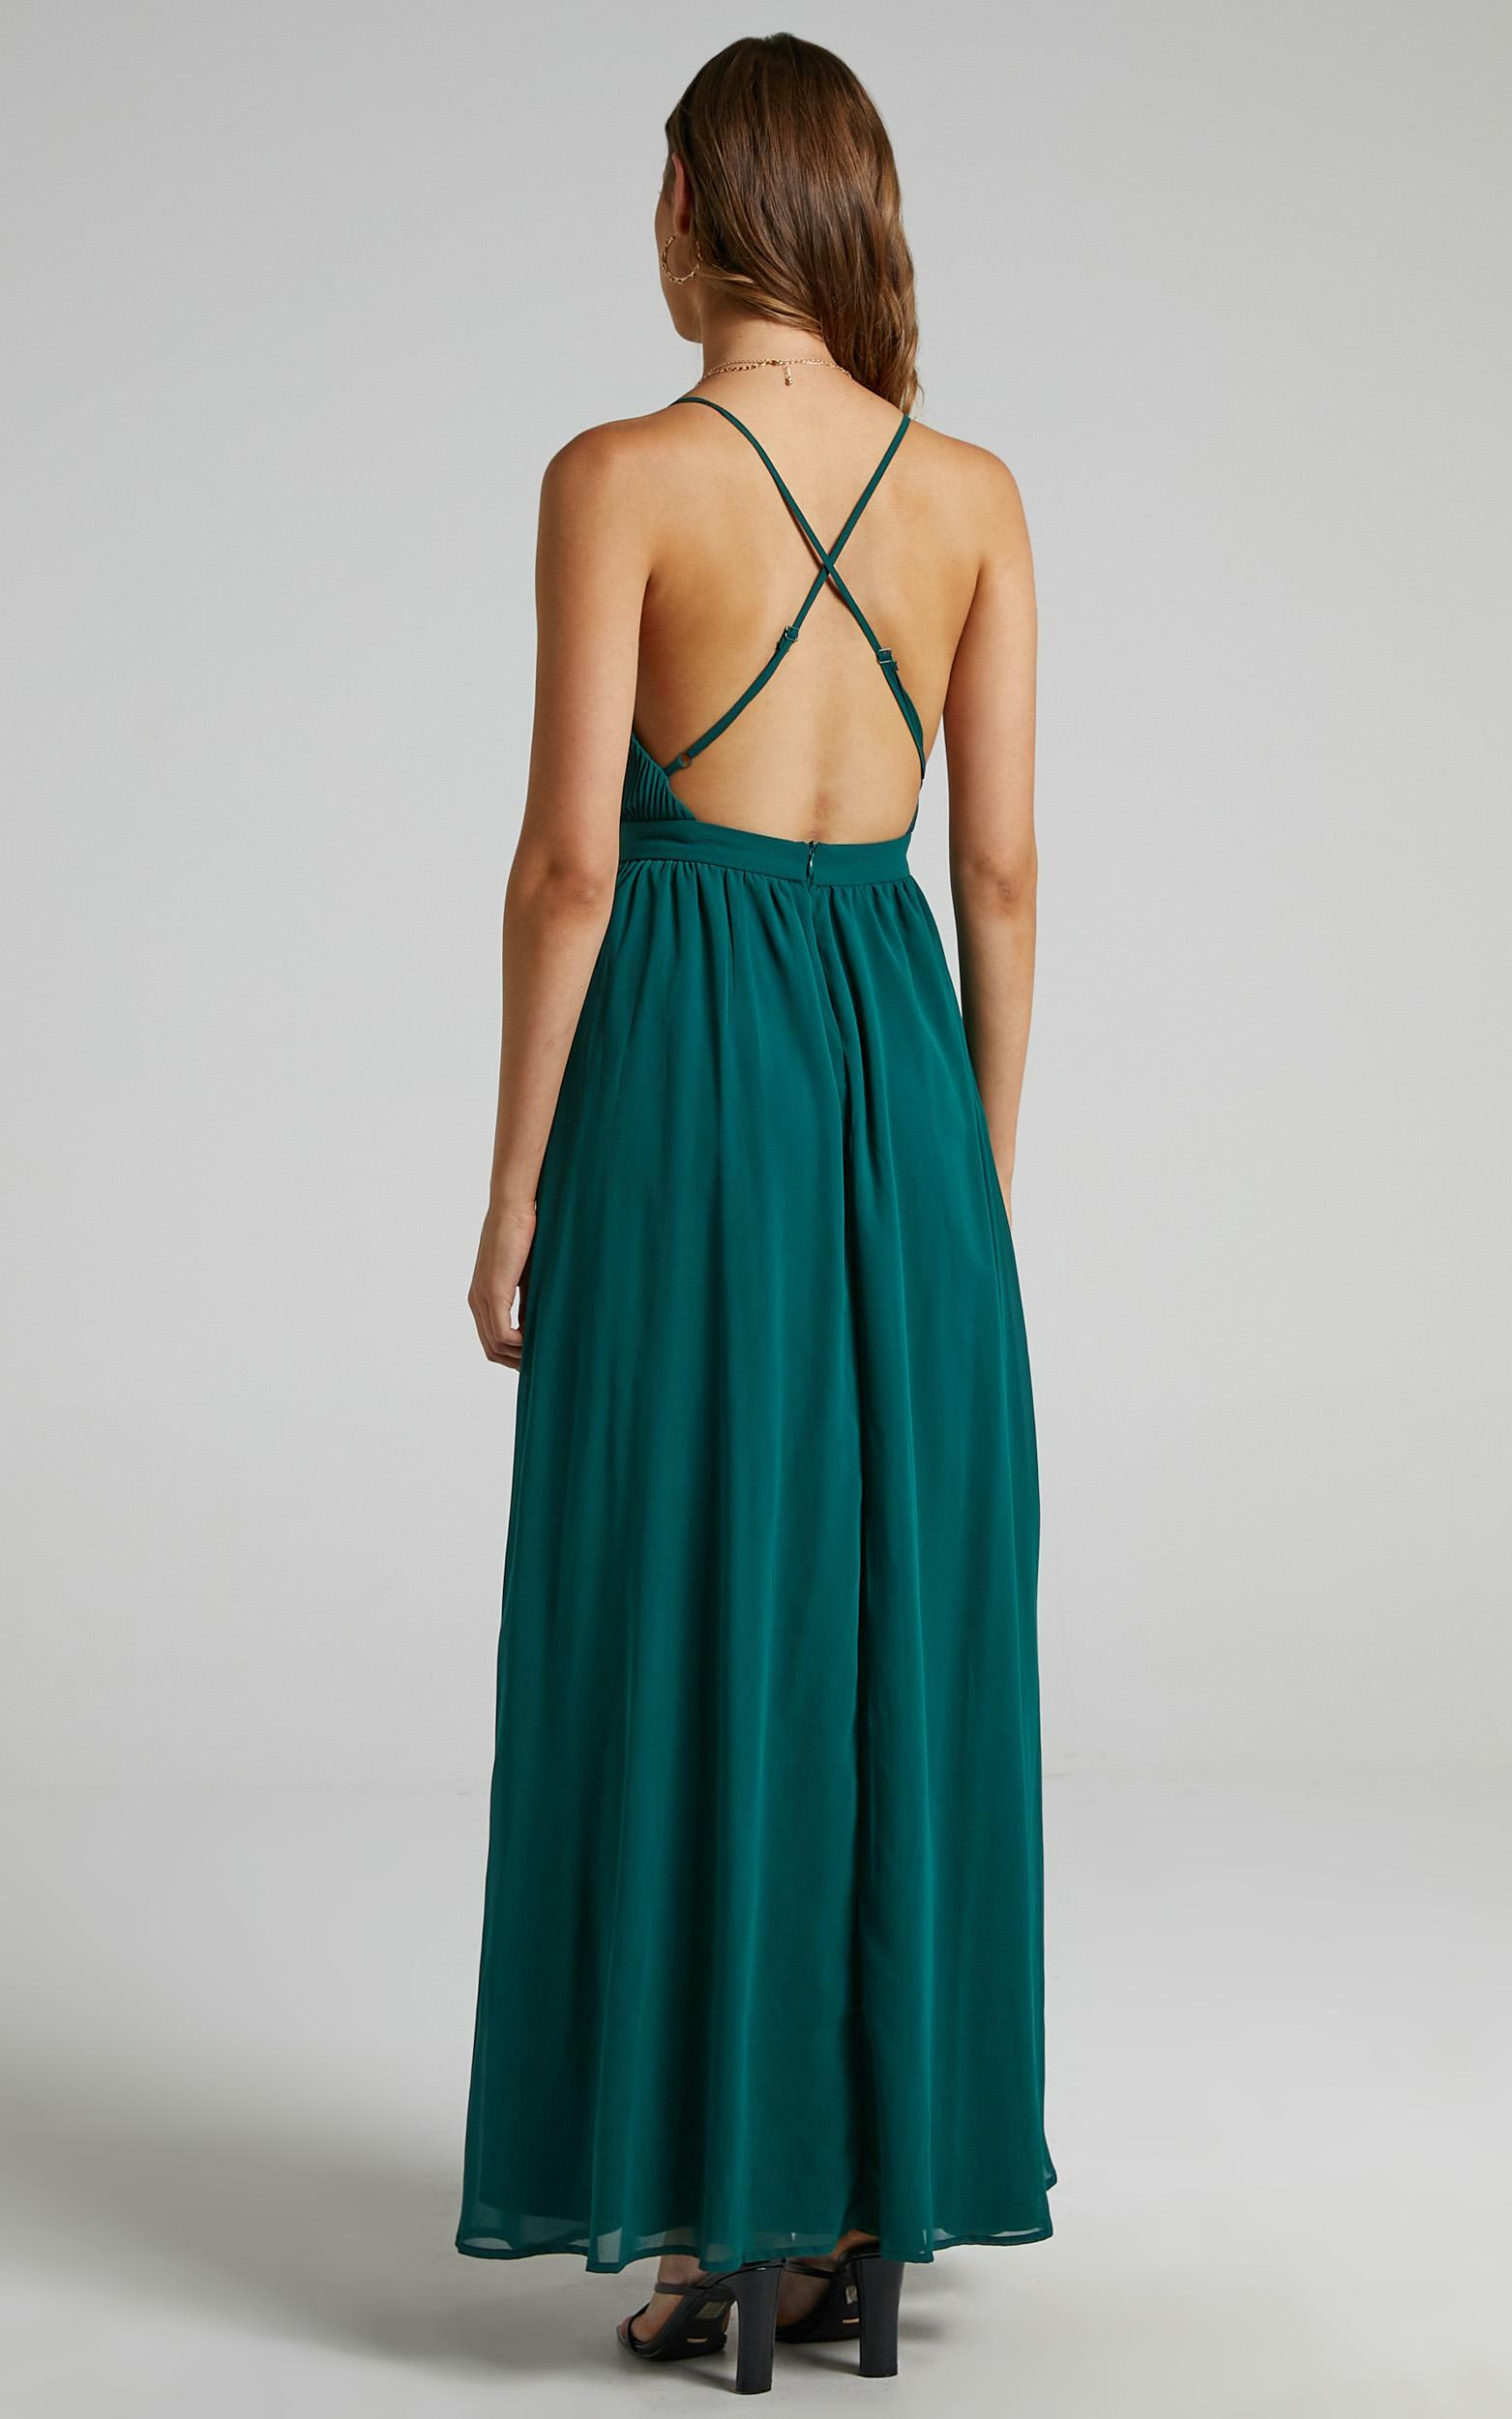 Shes A Delight Maxi Dress in Emerald | Showpo USA